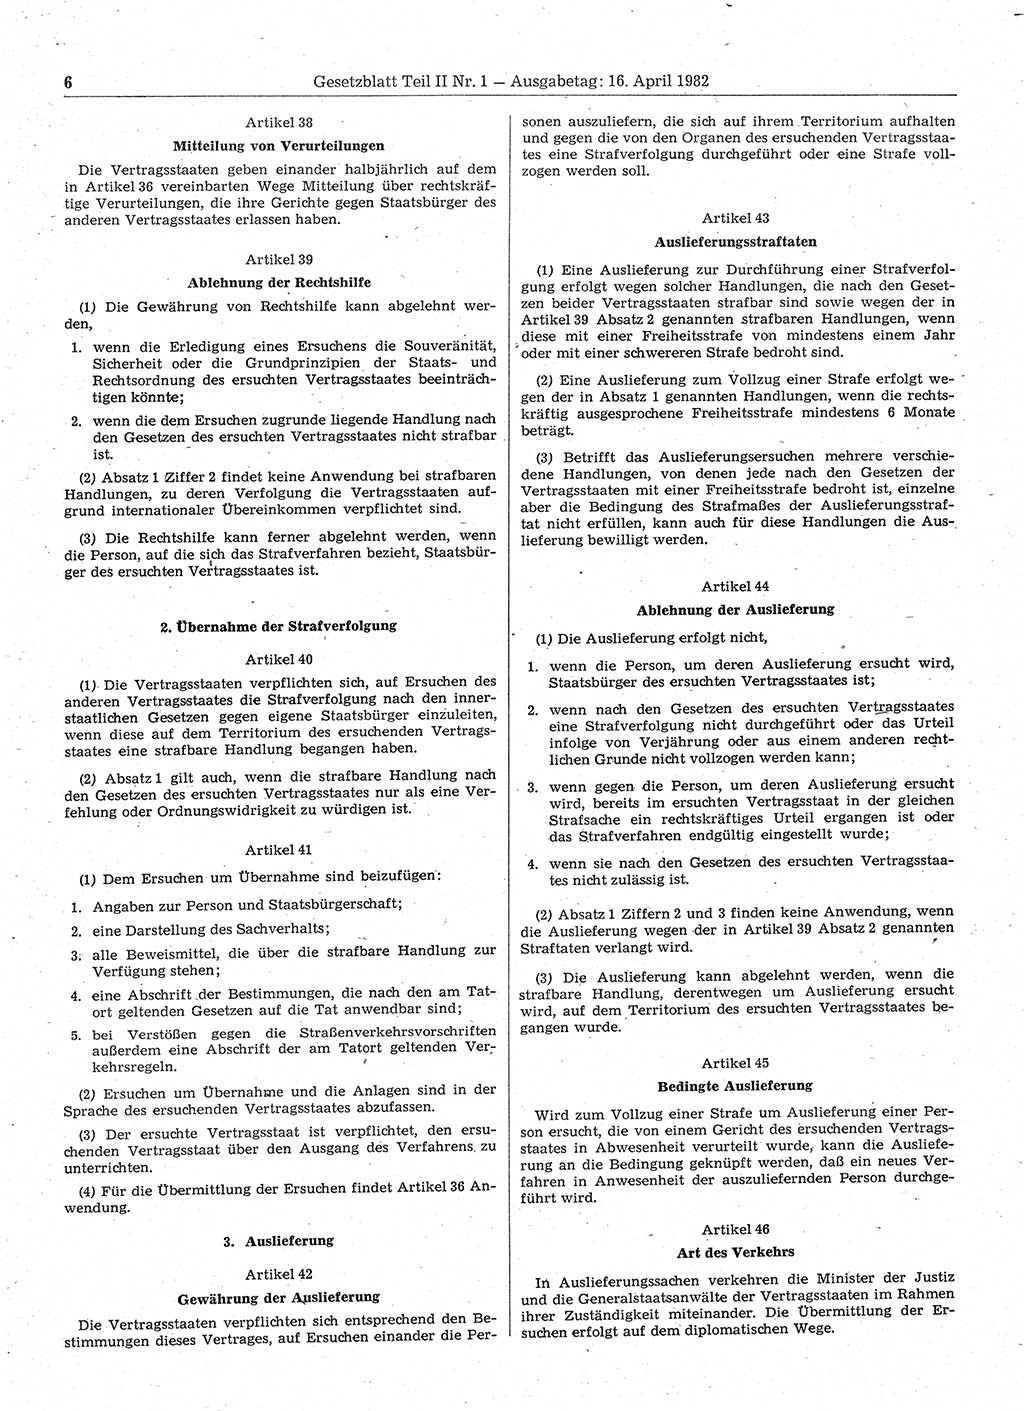 Gesetzblatt (GBl.) der Deutschen Demokratischen Republik (DDR) Teil ⅠⅠ 1982, Seite 6 (GBl. DDR ⅠⅠ 1982, S. 6)